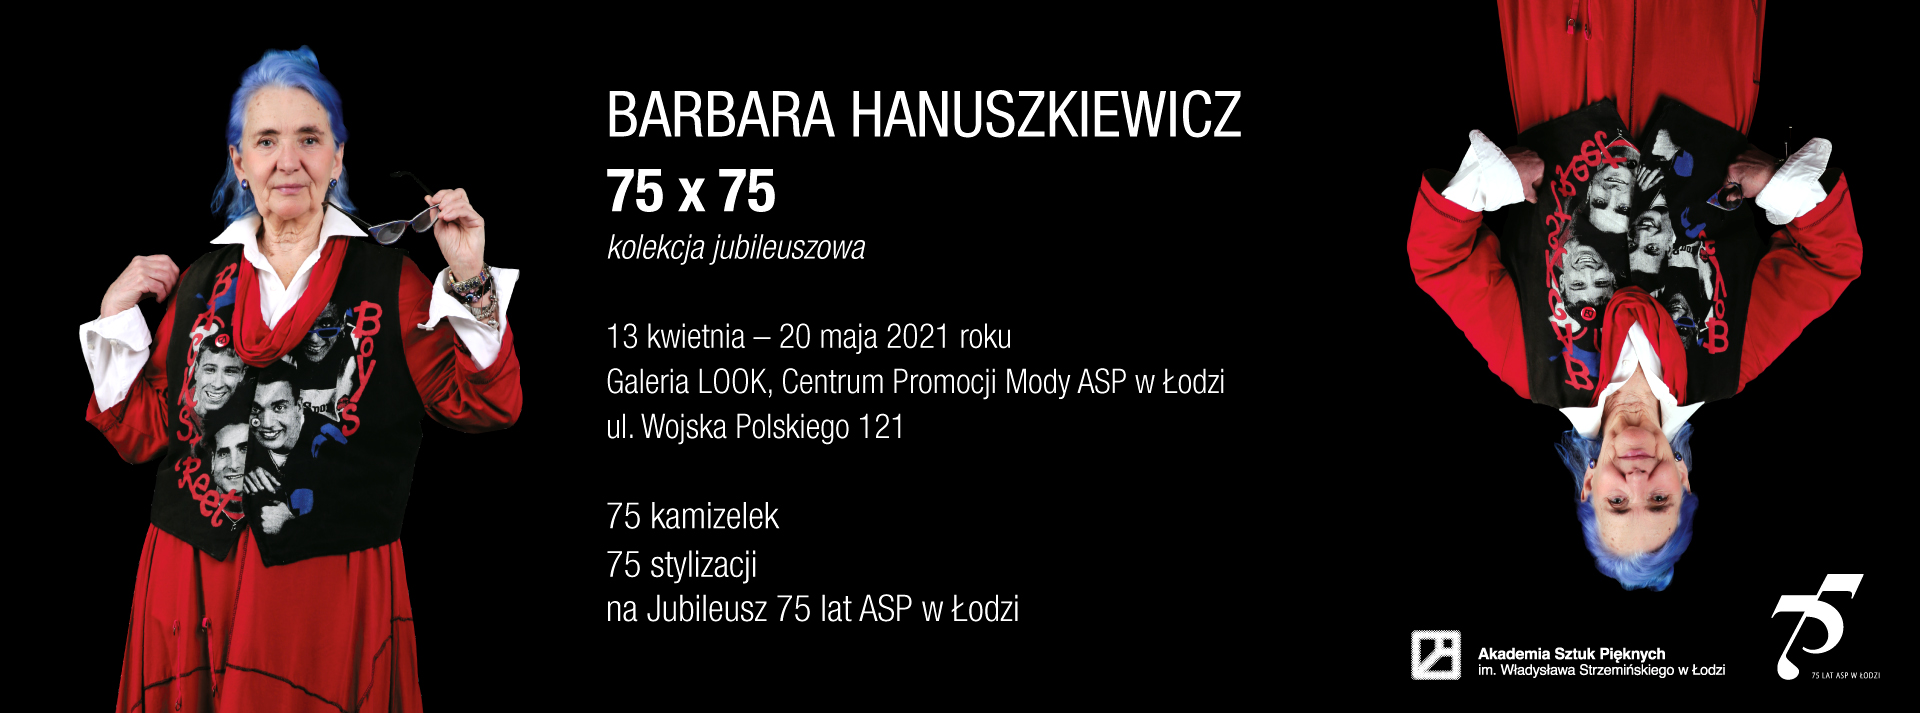 Hanuszkiewicz